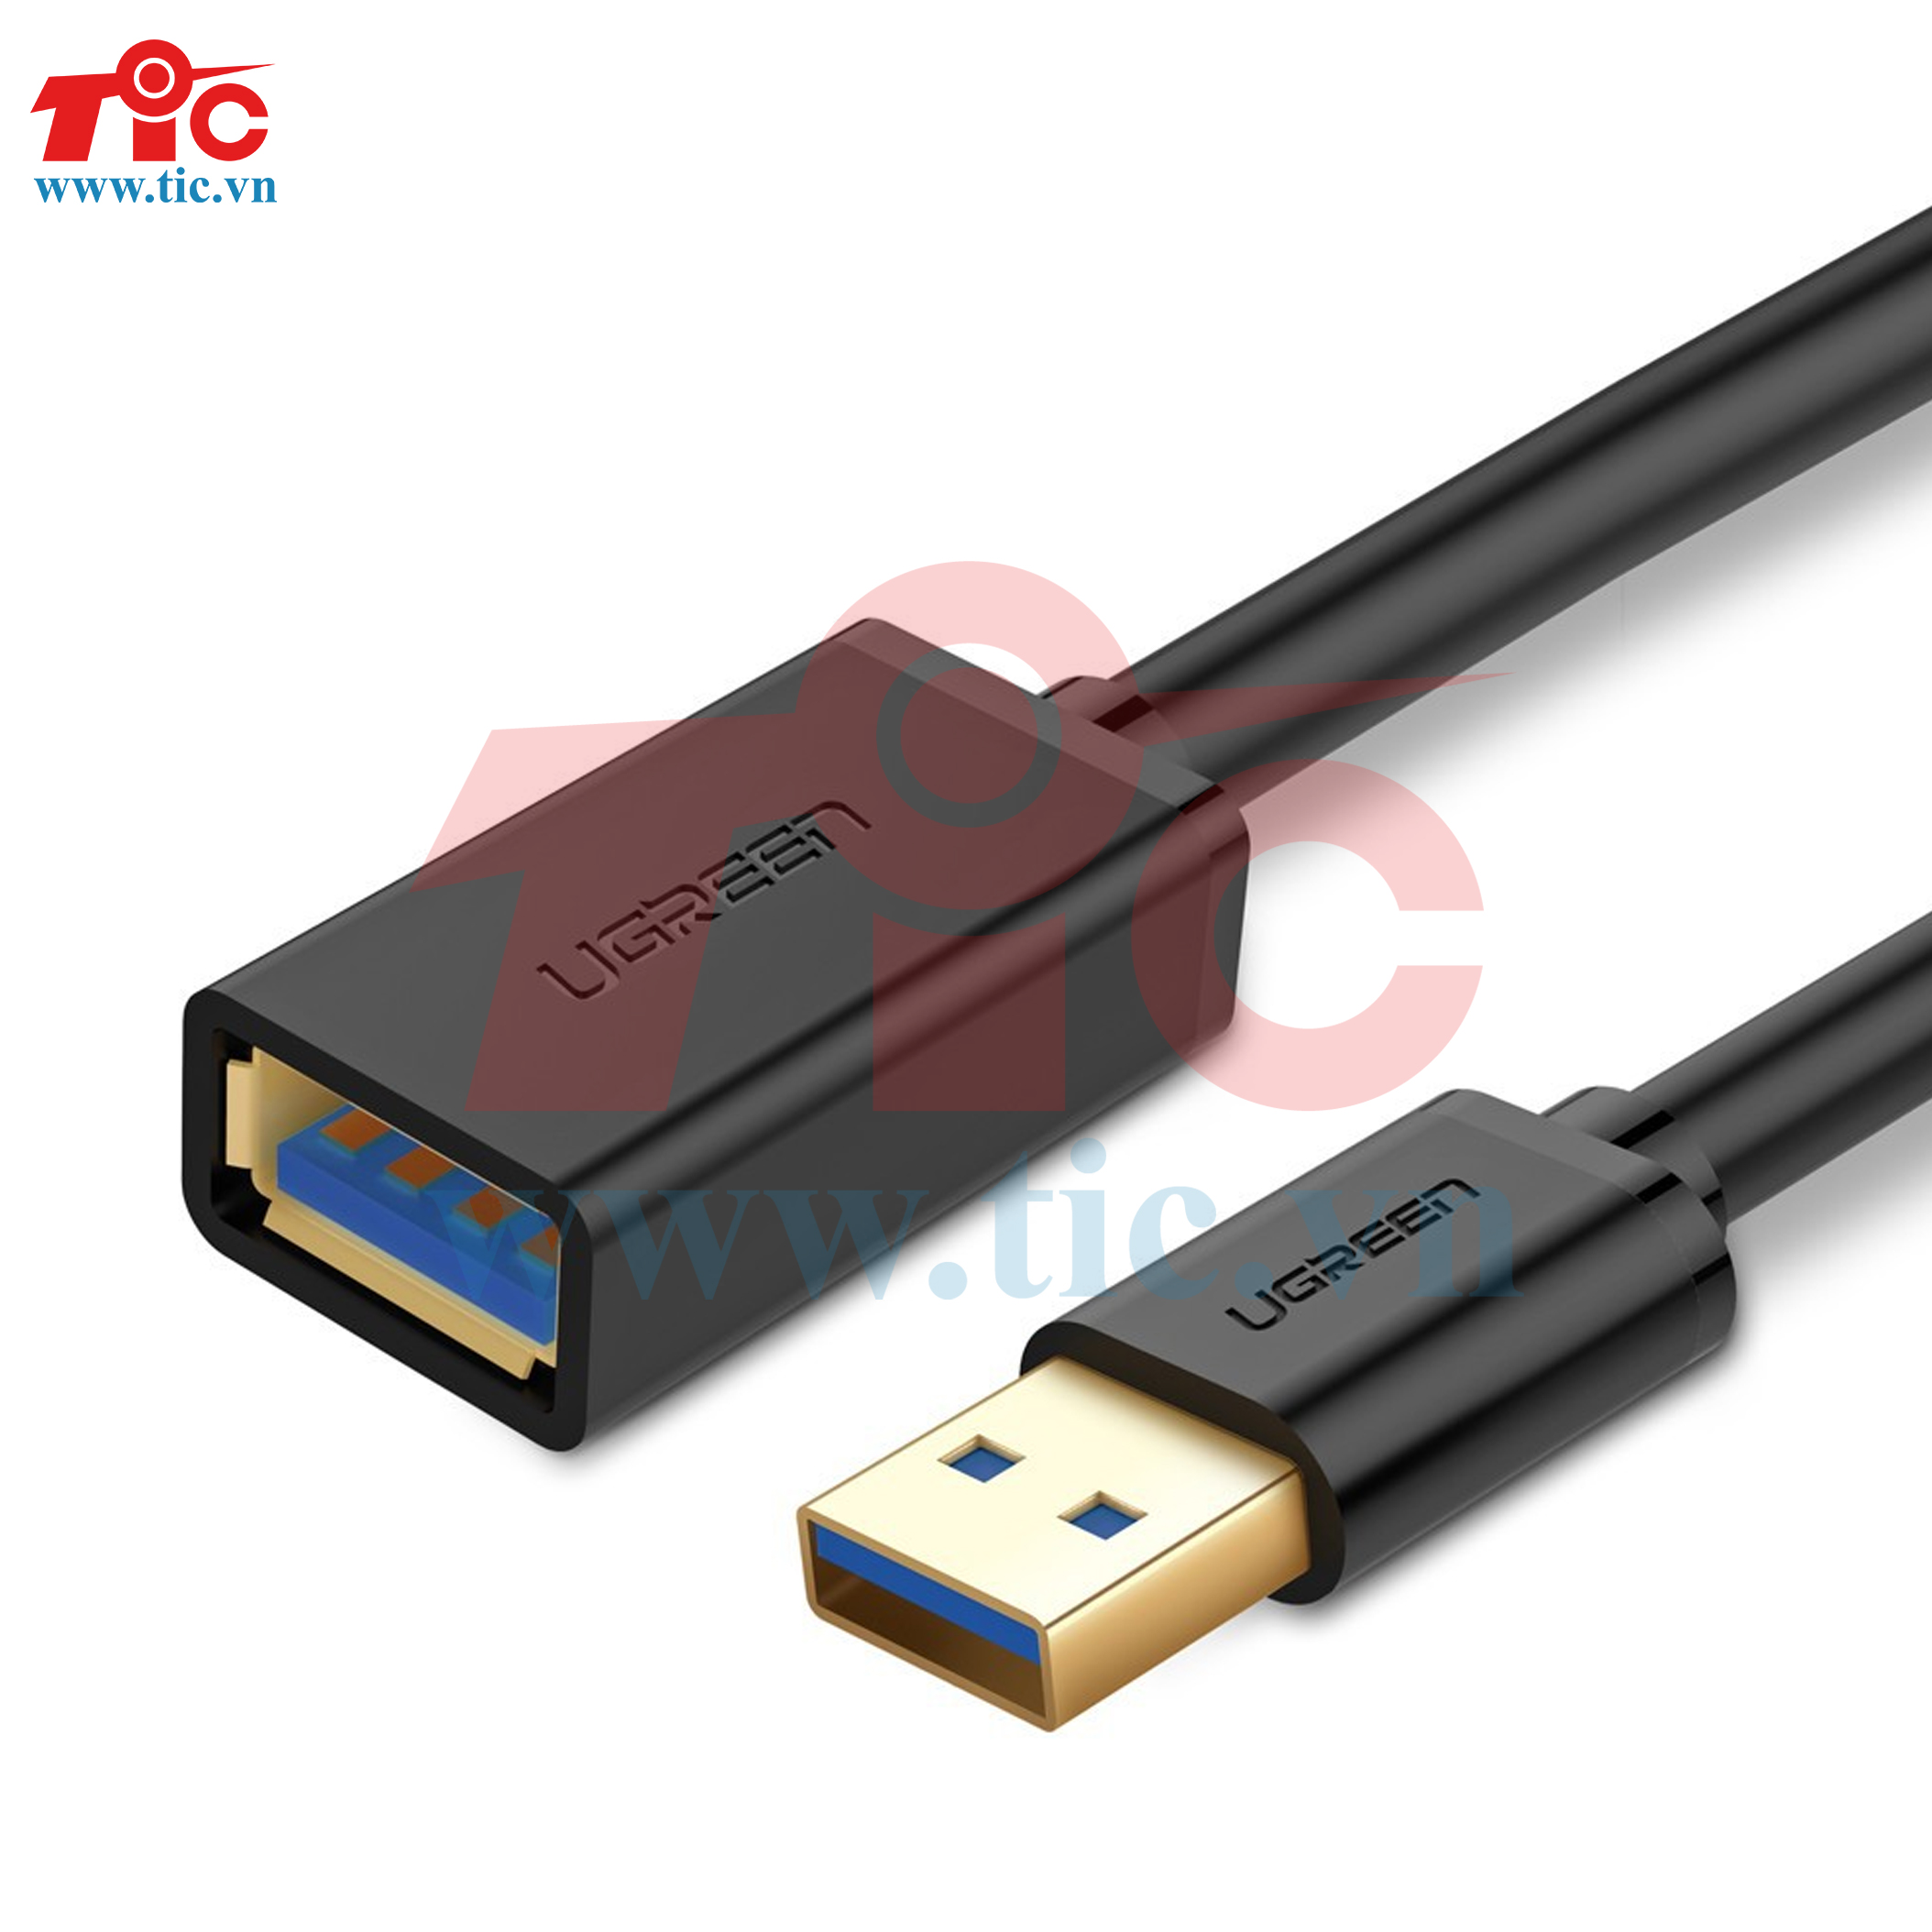 Cáp USB nối dài 3.0 Ugreen 30126- 1.5M